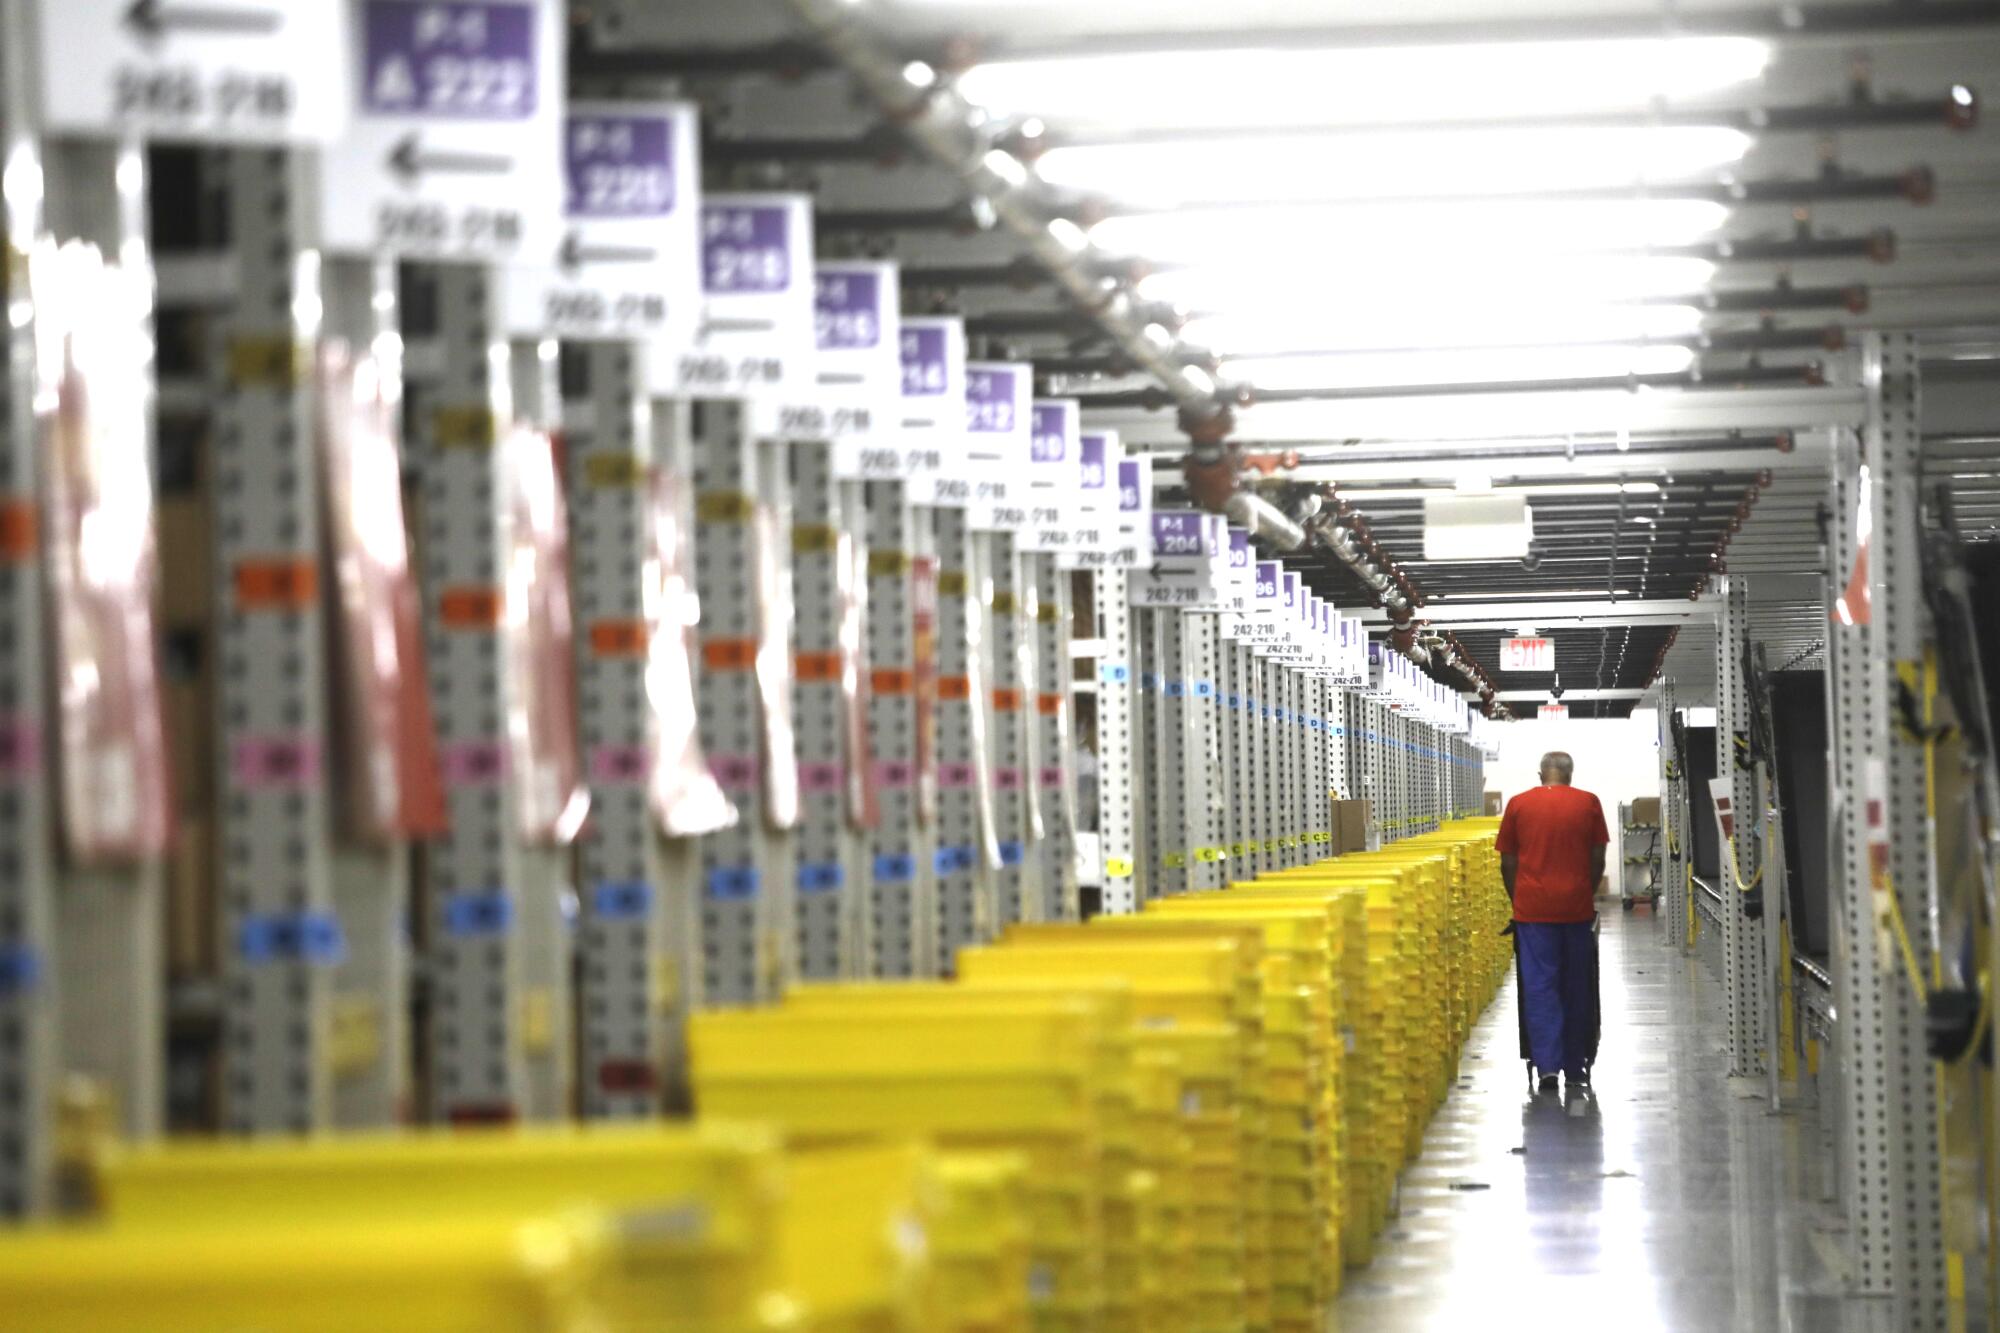 Une longue file de caisses en plastique jaune à l’intérieur d’un entrepôt.